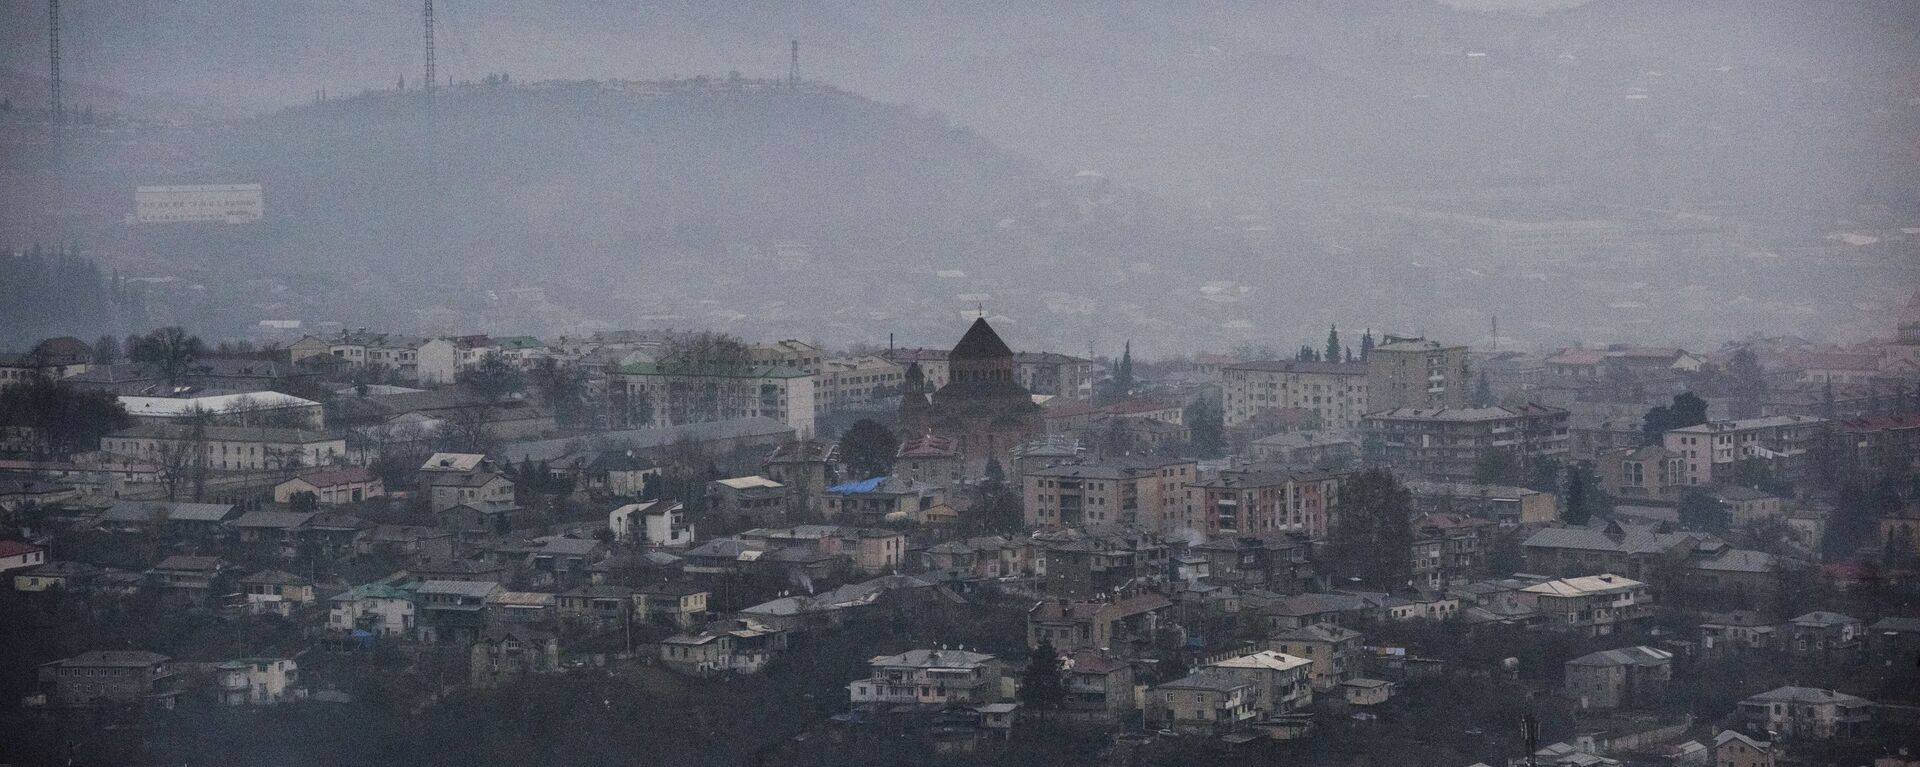 Situación en la ciudad de Stepanakert, Nagorno Karabaj - Sputnik Mundo, 1920, 10.09.2022